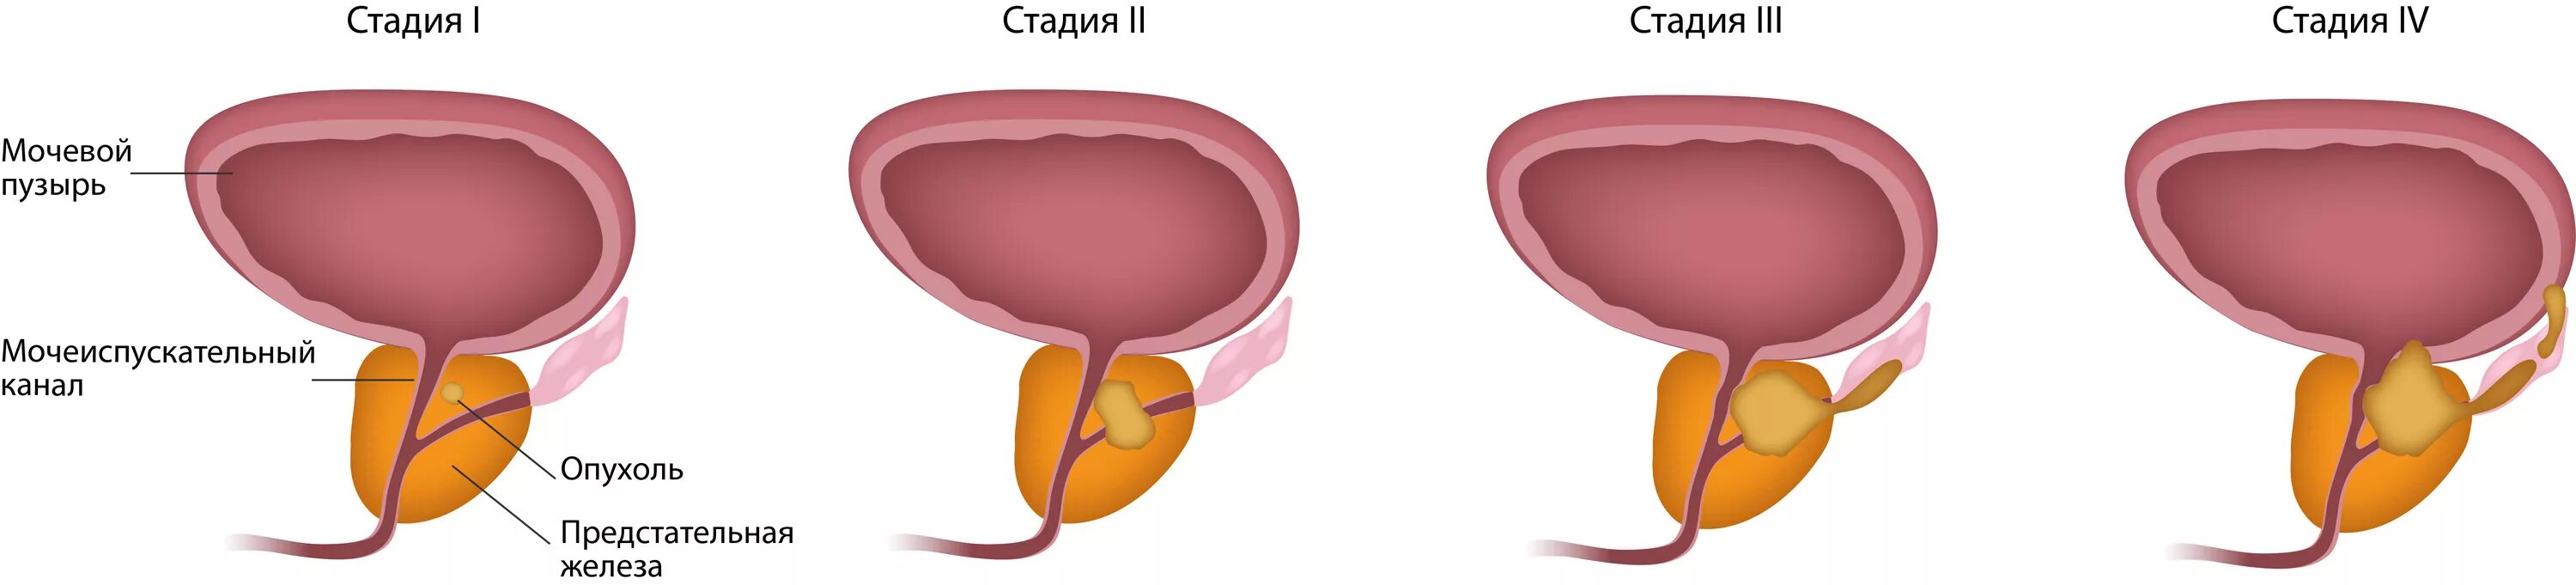 Аденома предстательной железы – это опухоль. Аденома карцинома предстательной железы. Тумор предстательной железы. Этапы развития онкологии простаты. Простата это предстательная